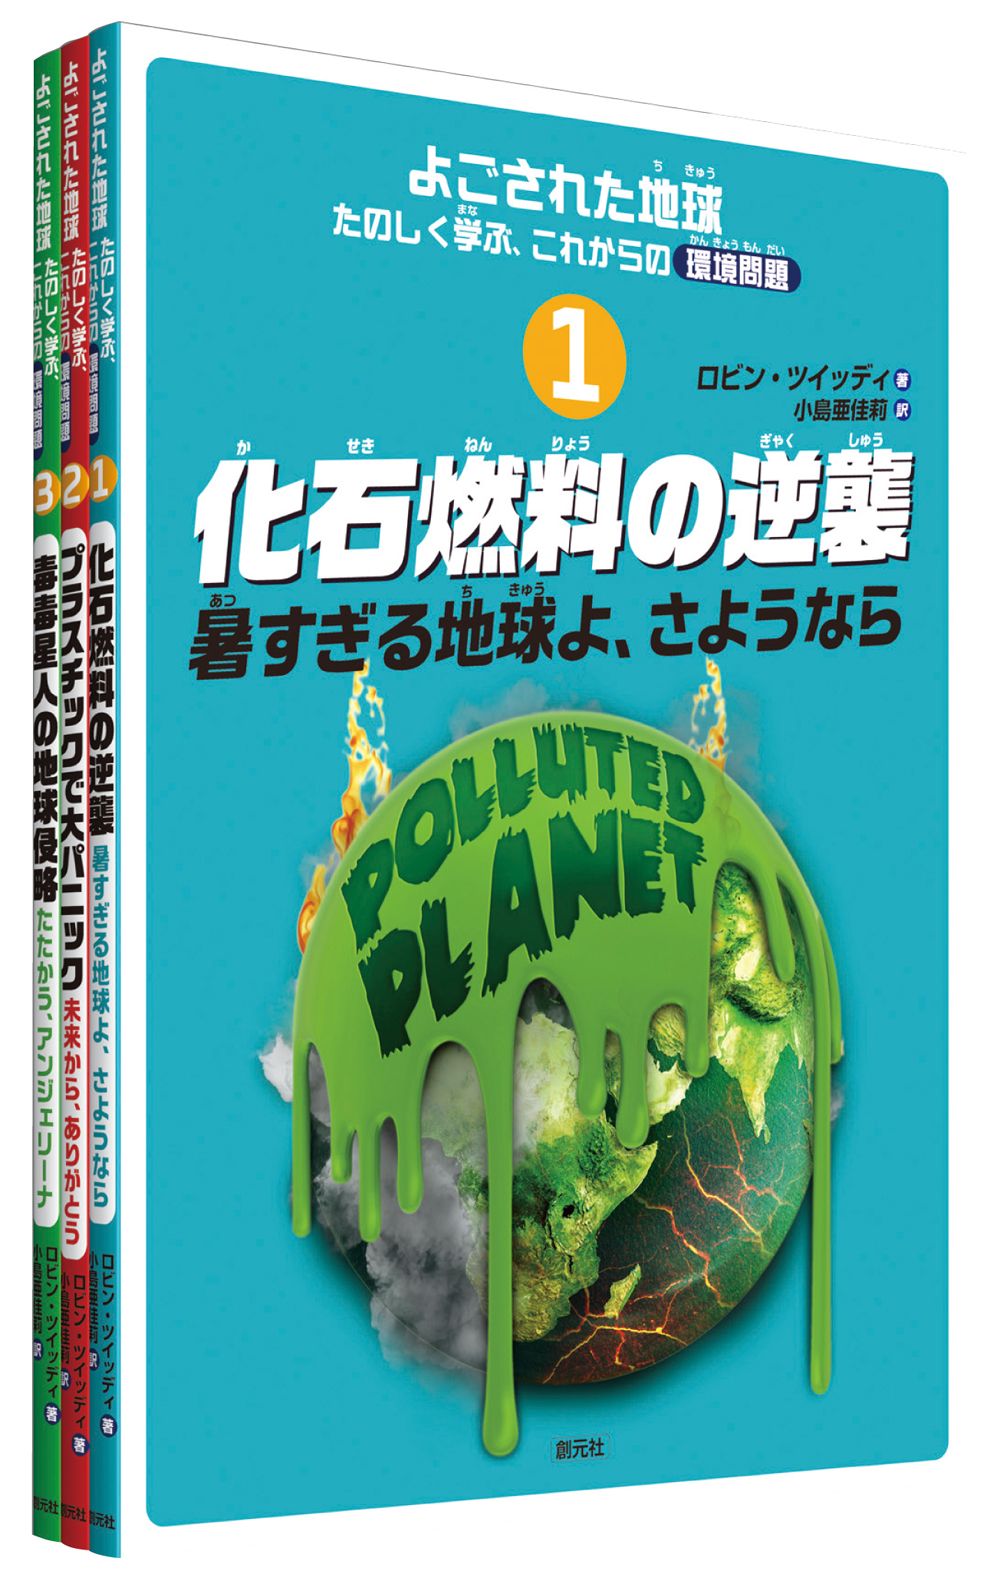 書籍詳細 よごされた地球 たのしく学ぶ これからの環境問題 全３巻 創元社